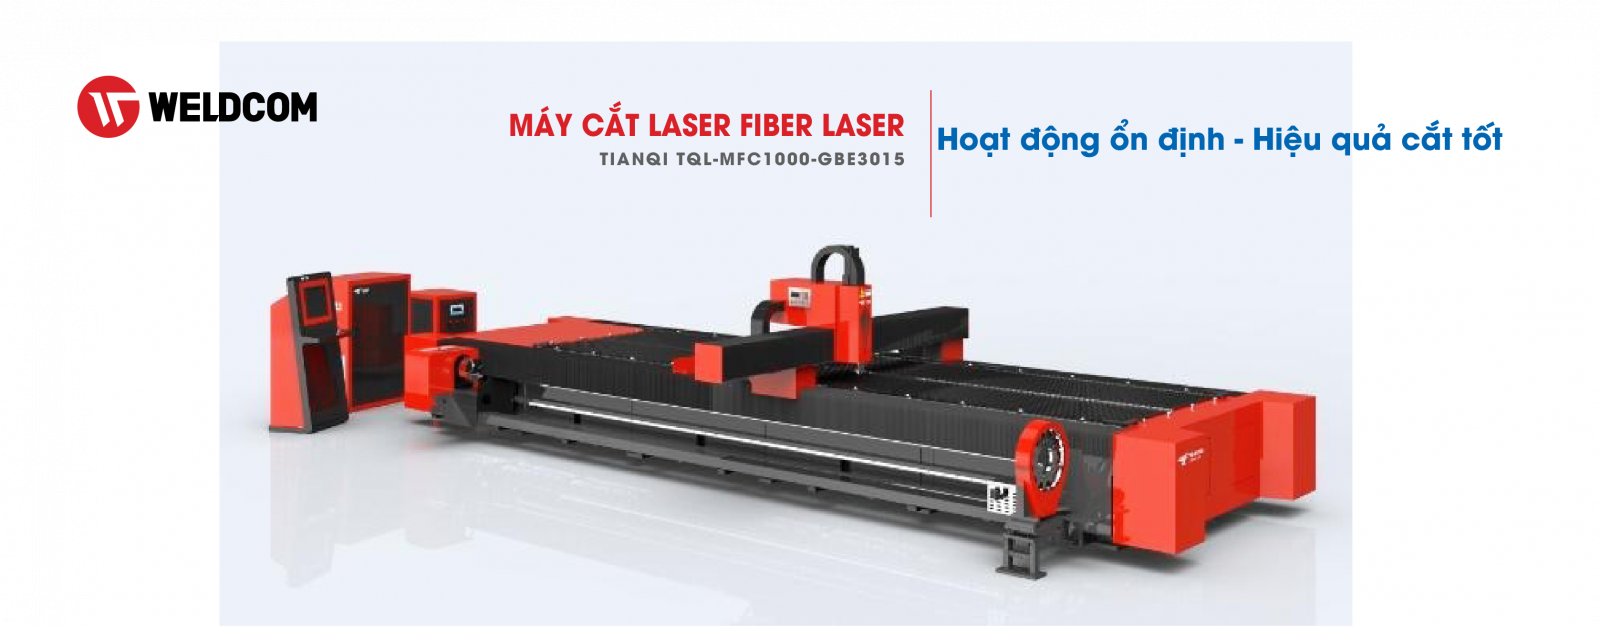 Máy cắt laser sợi quang Fiber Laser Tianqi TQL-MFC1000-GBE3015